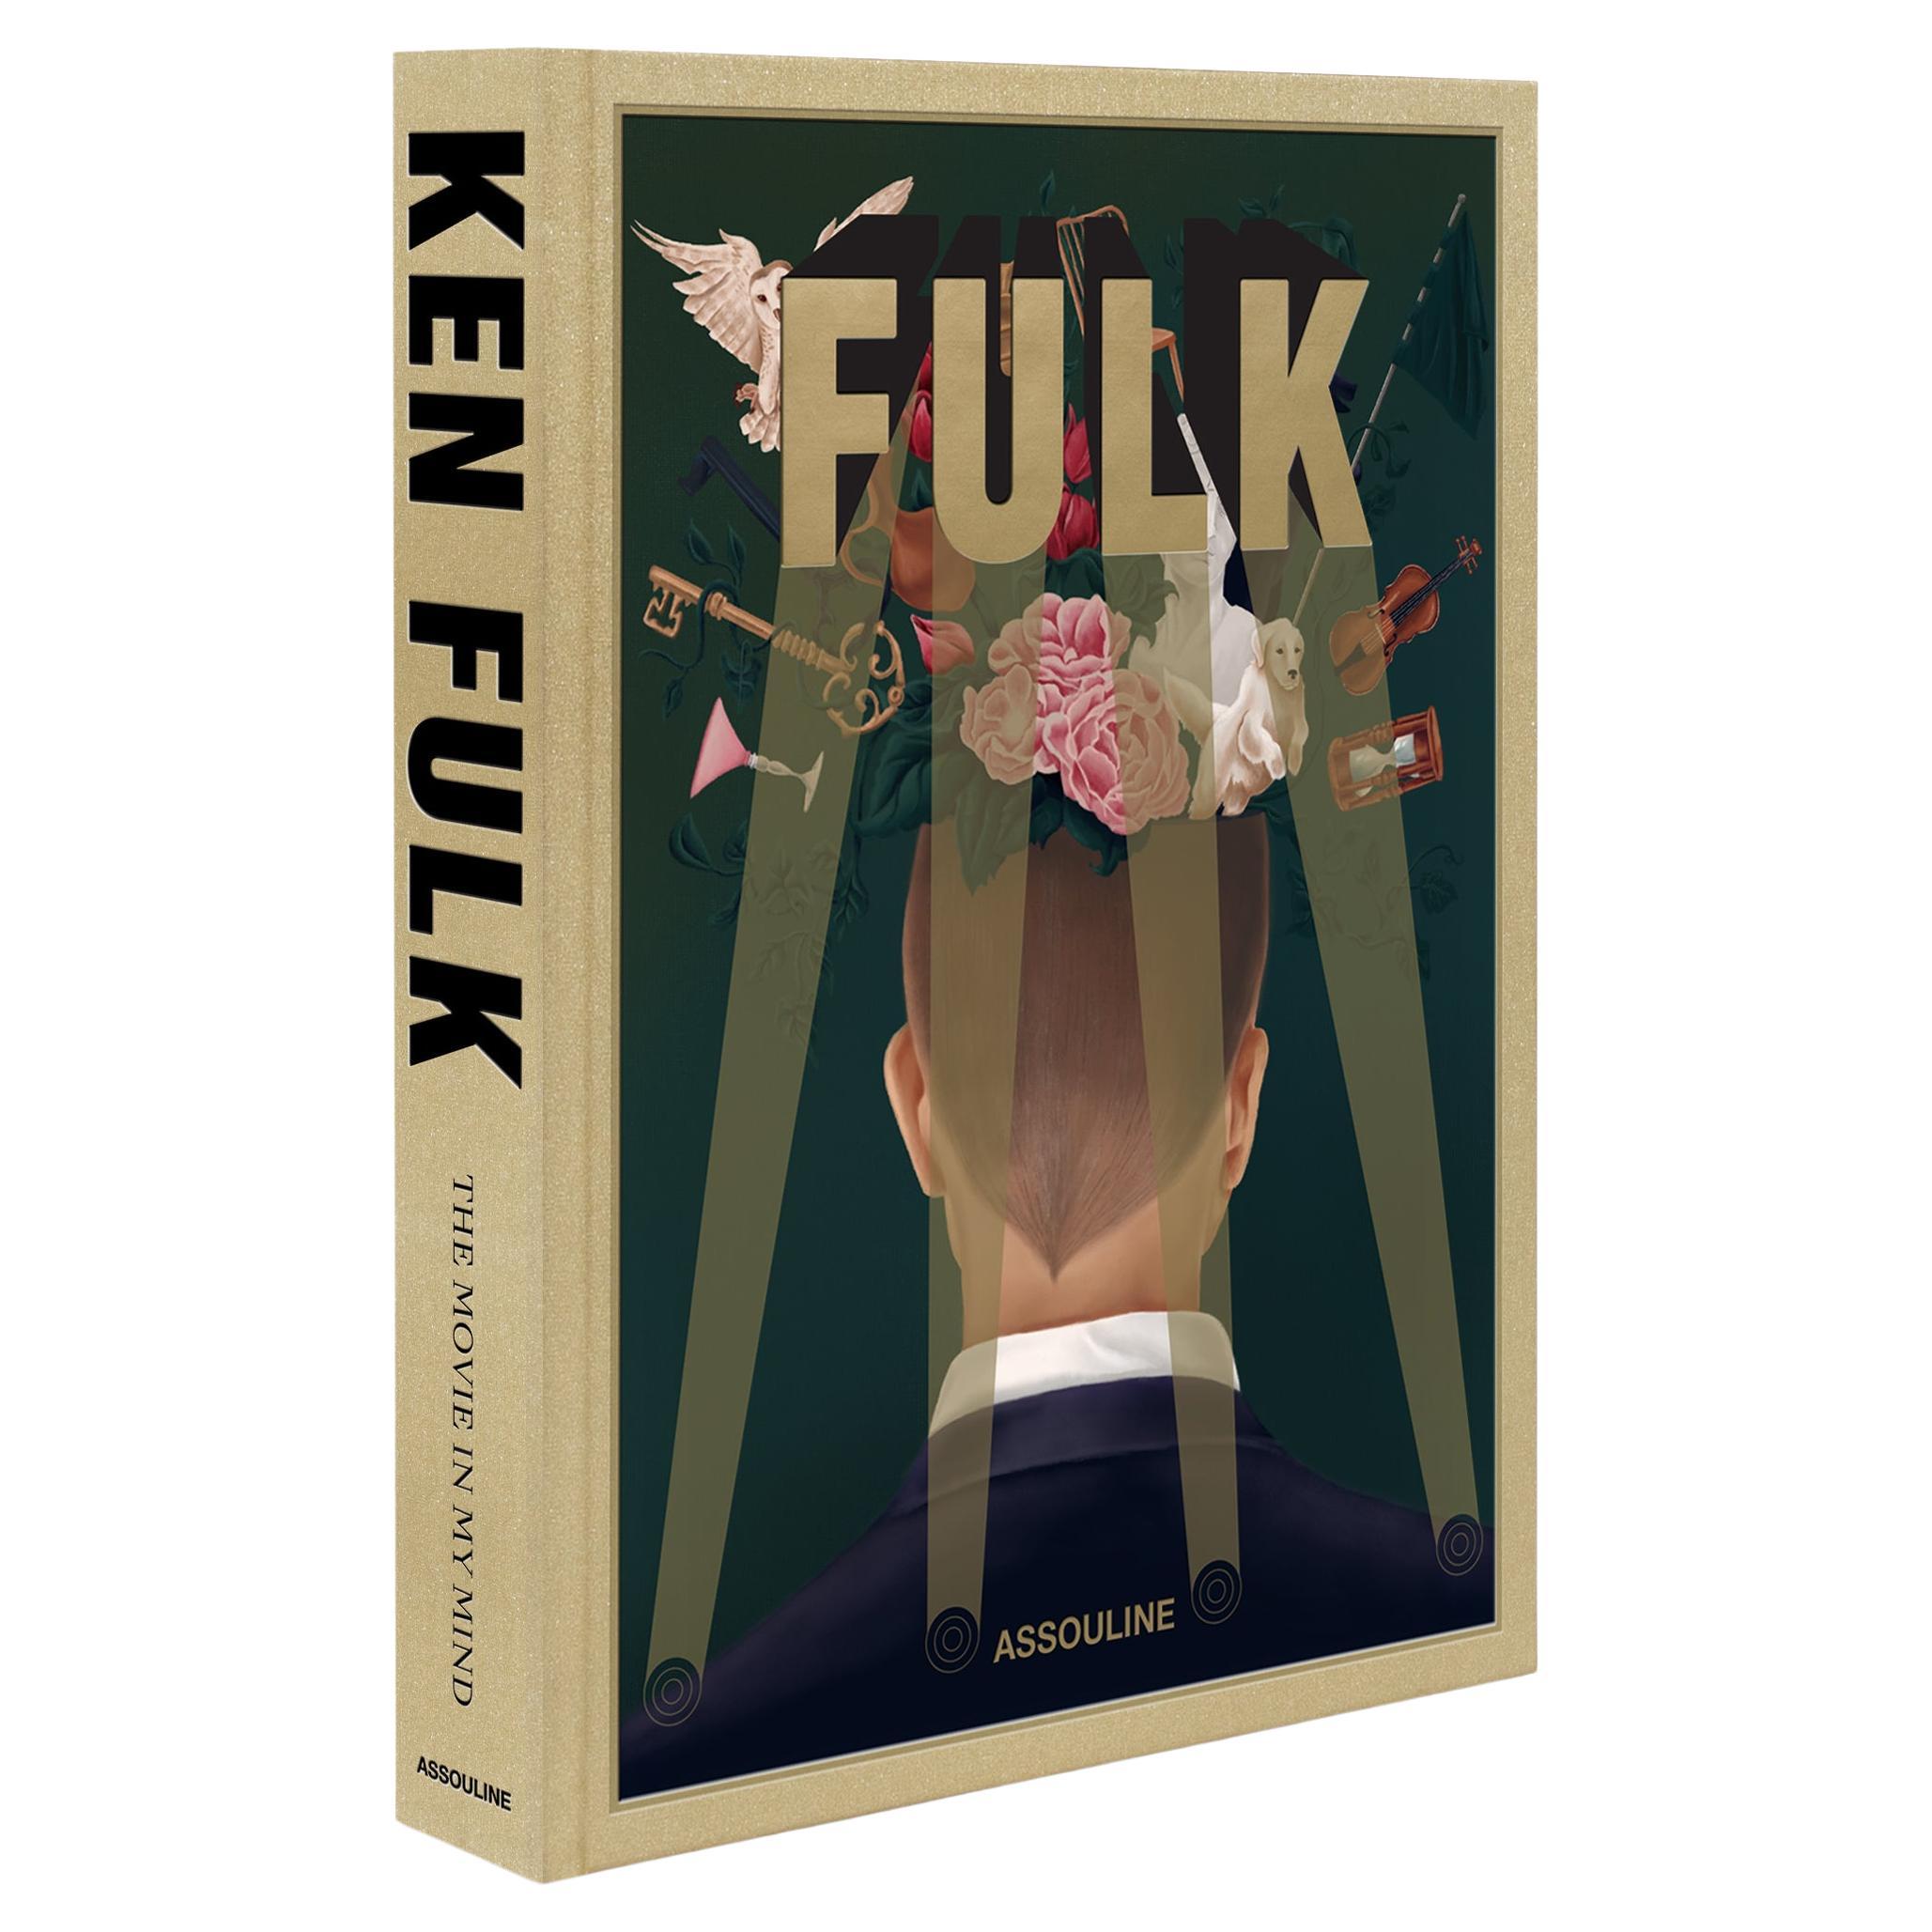 Ken Fulk: The Movie in My Mind